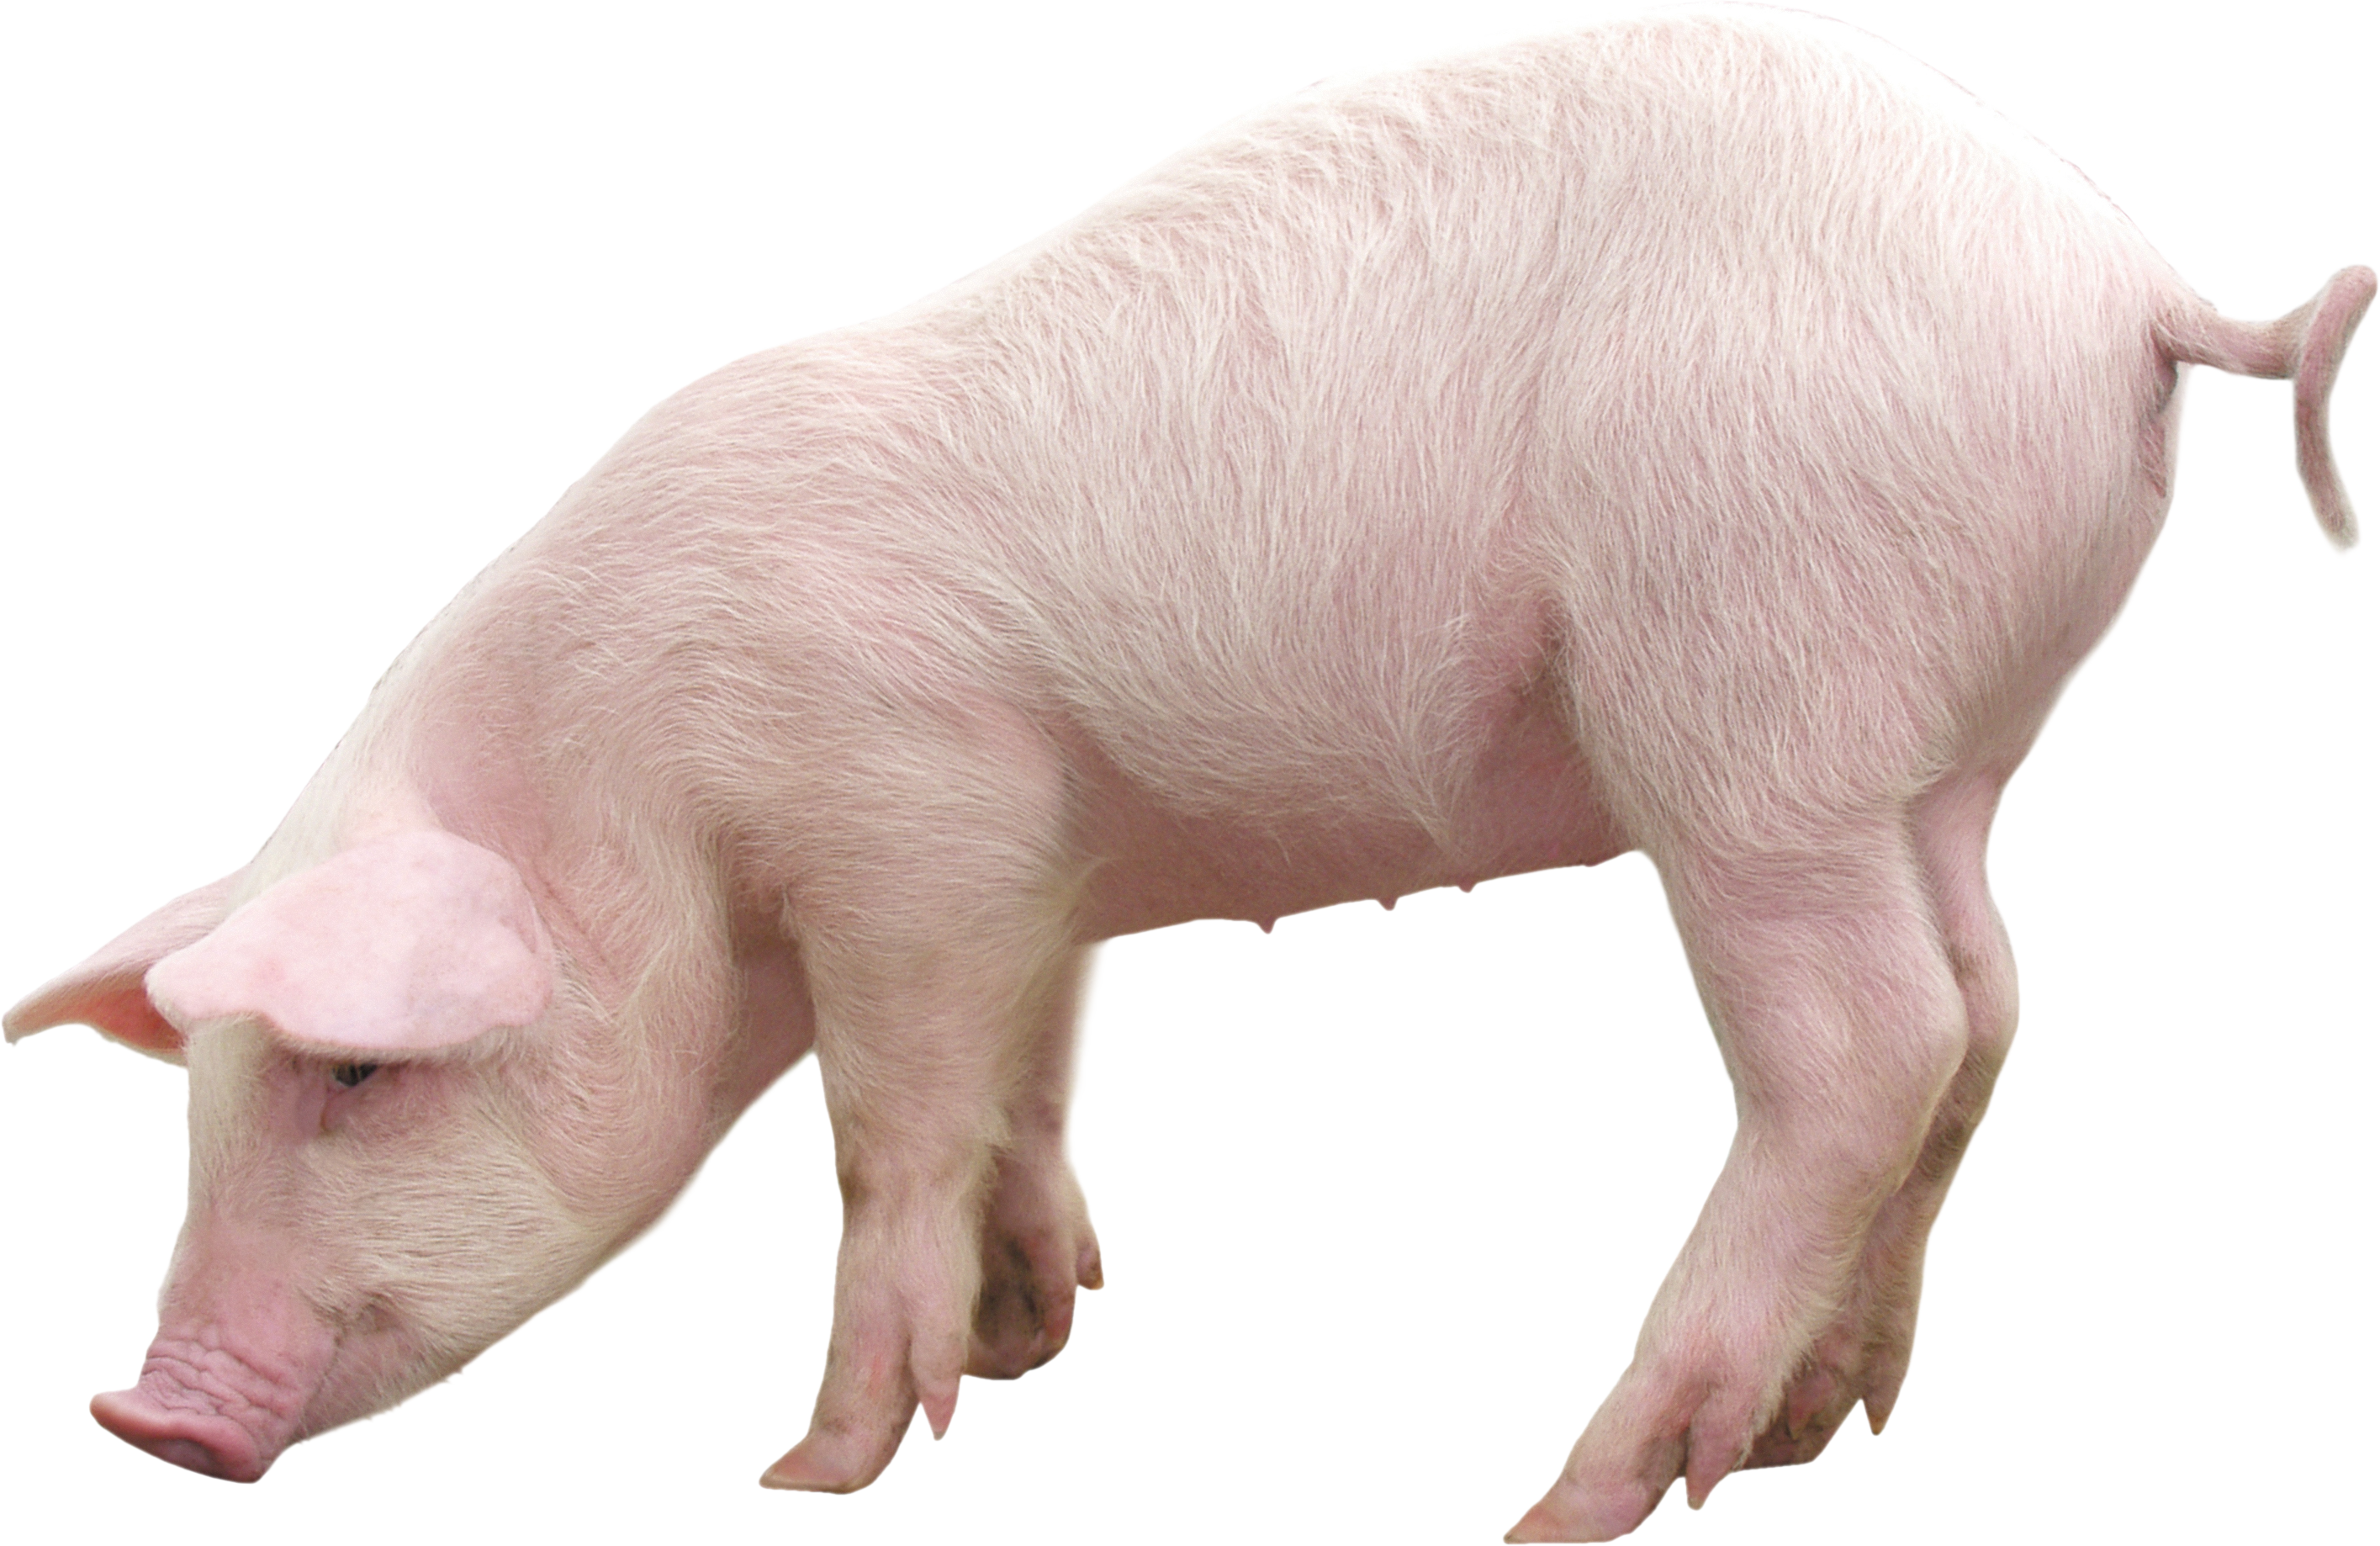 Imagen Transparente de cerdo de granja